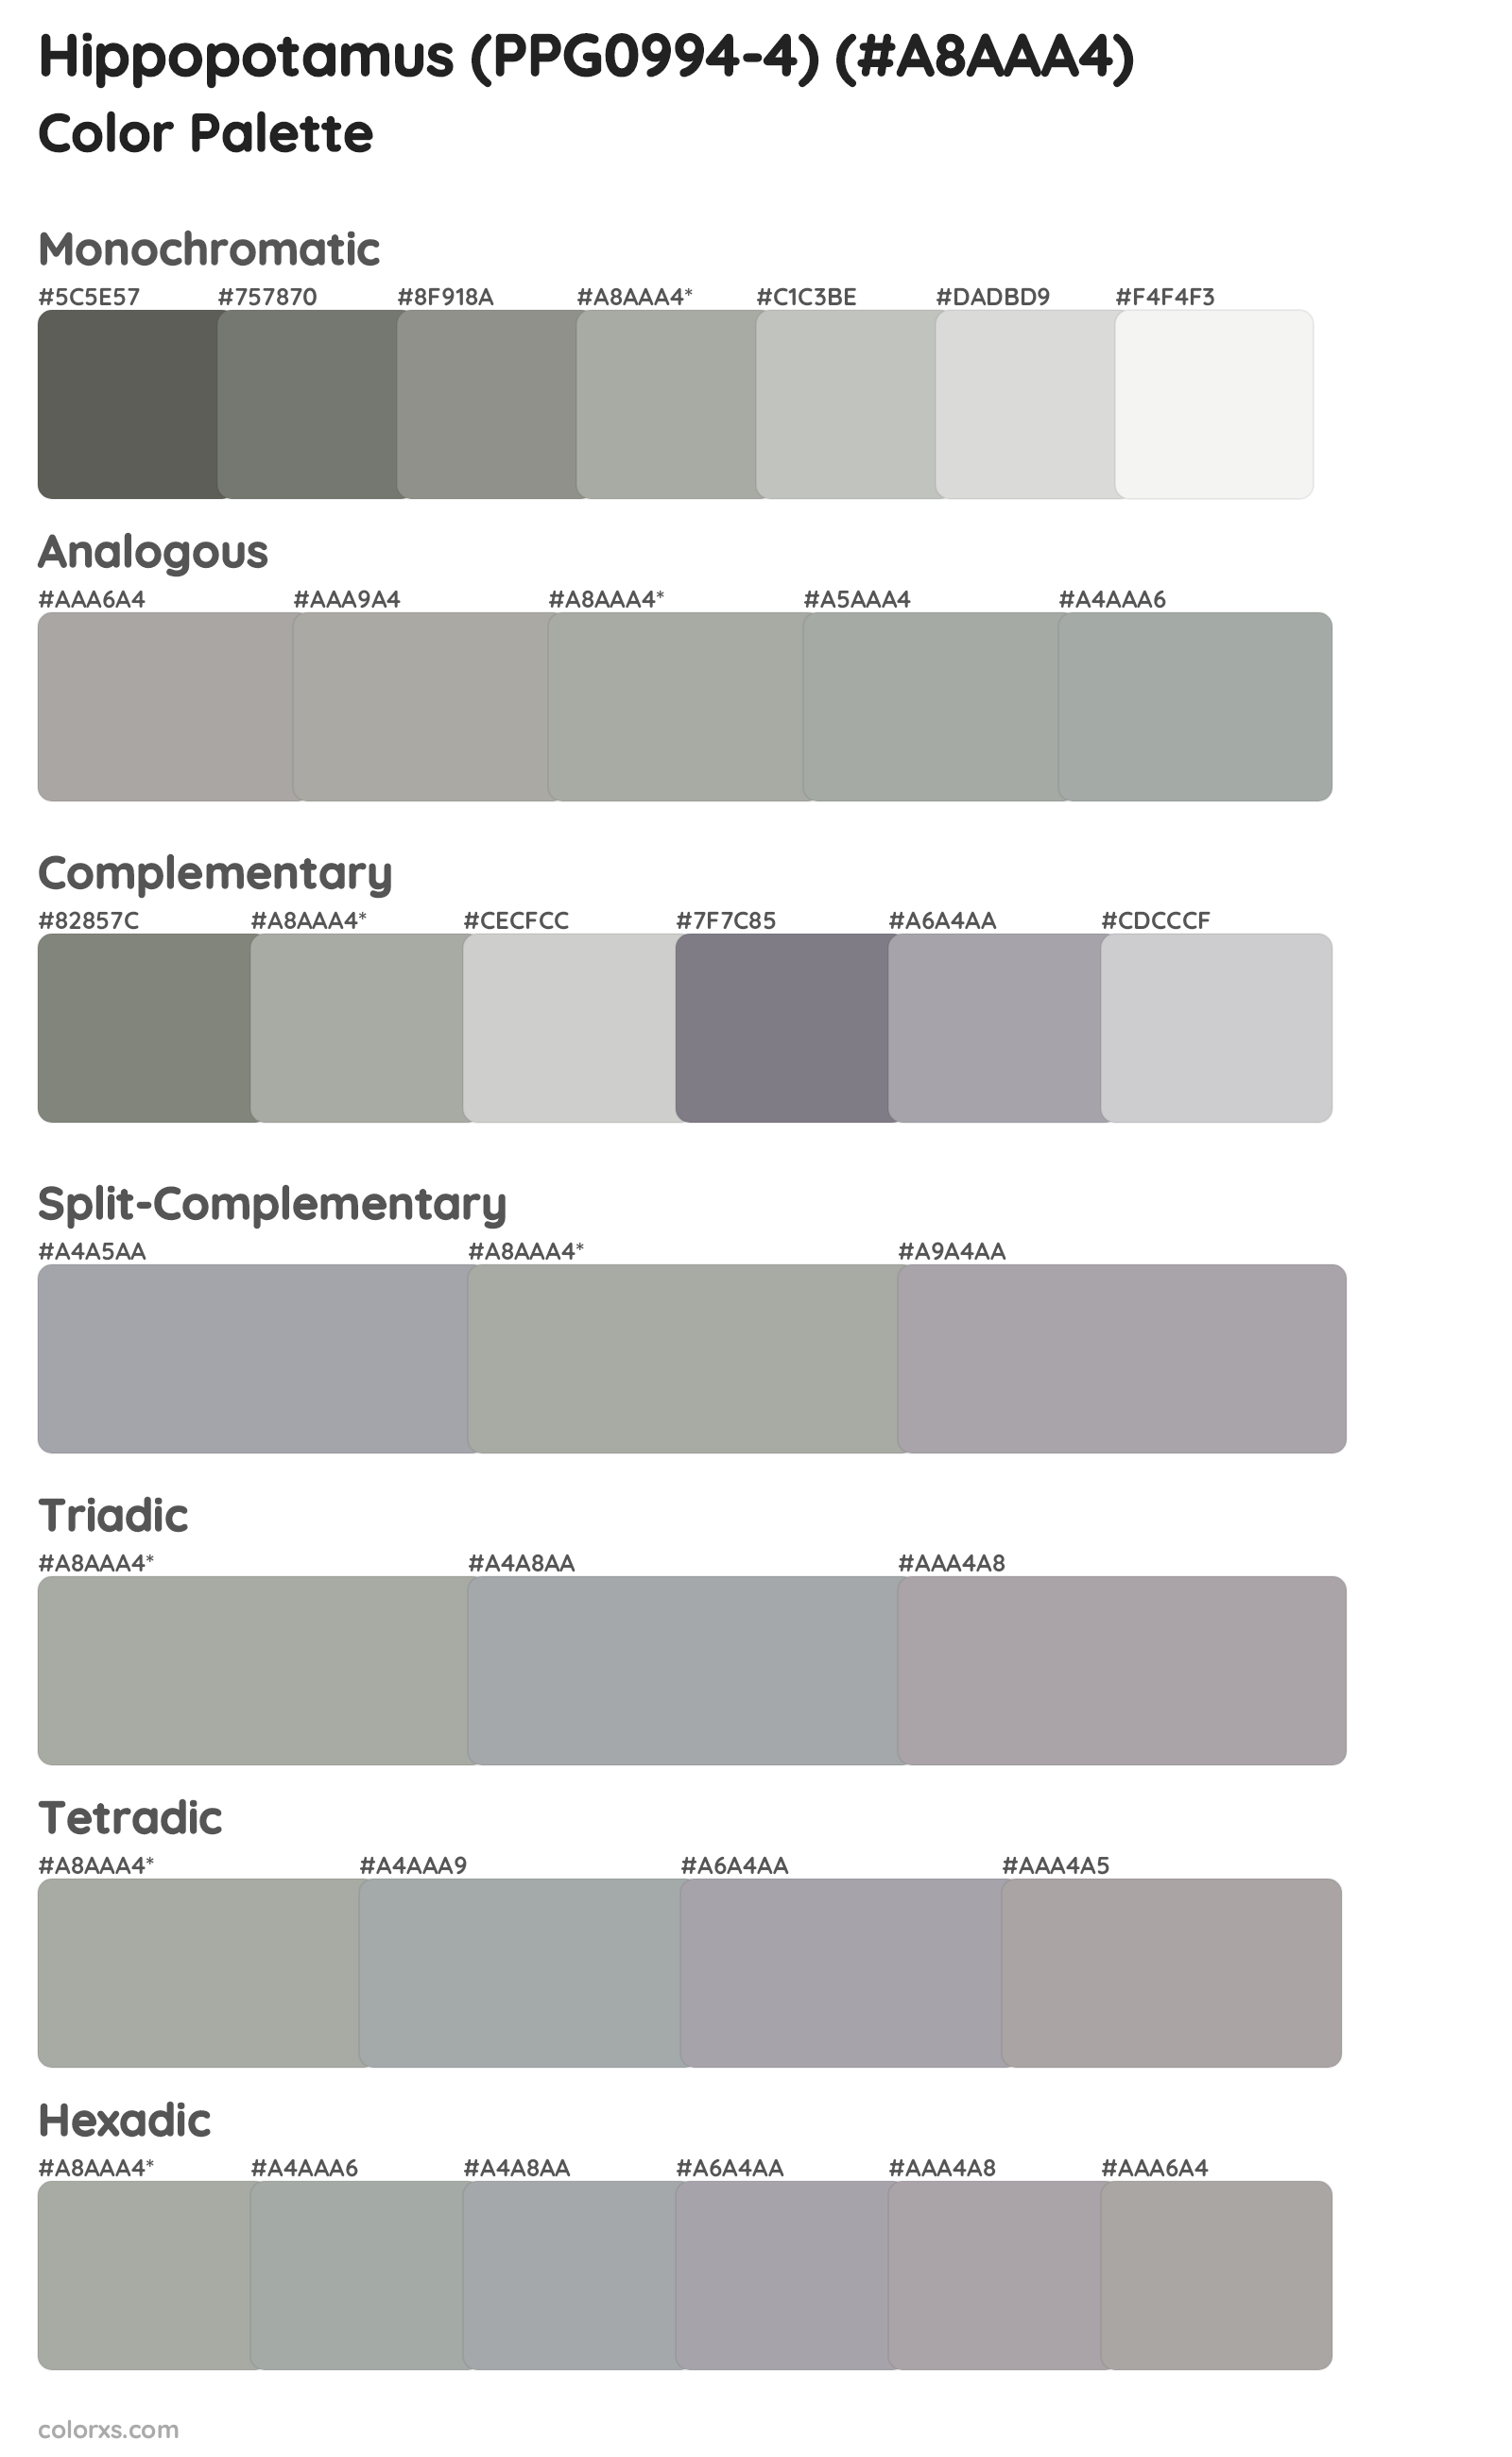 Hippopotamus (PPG0994-4) Color Scheme Palettes